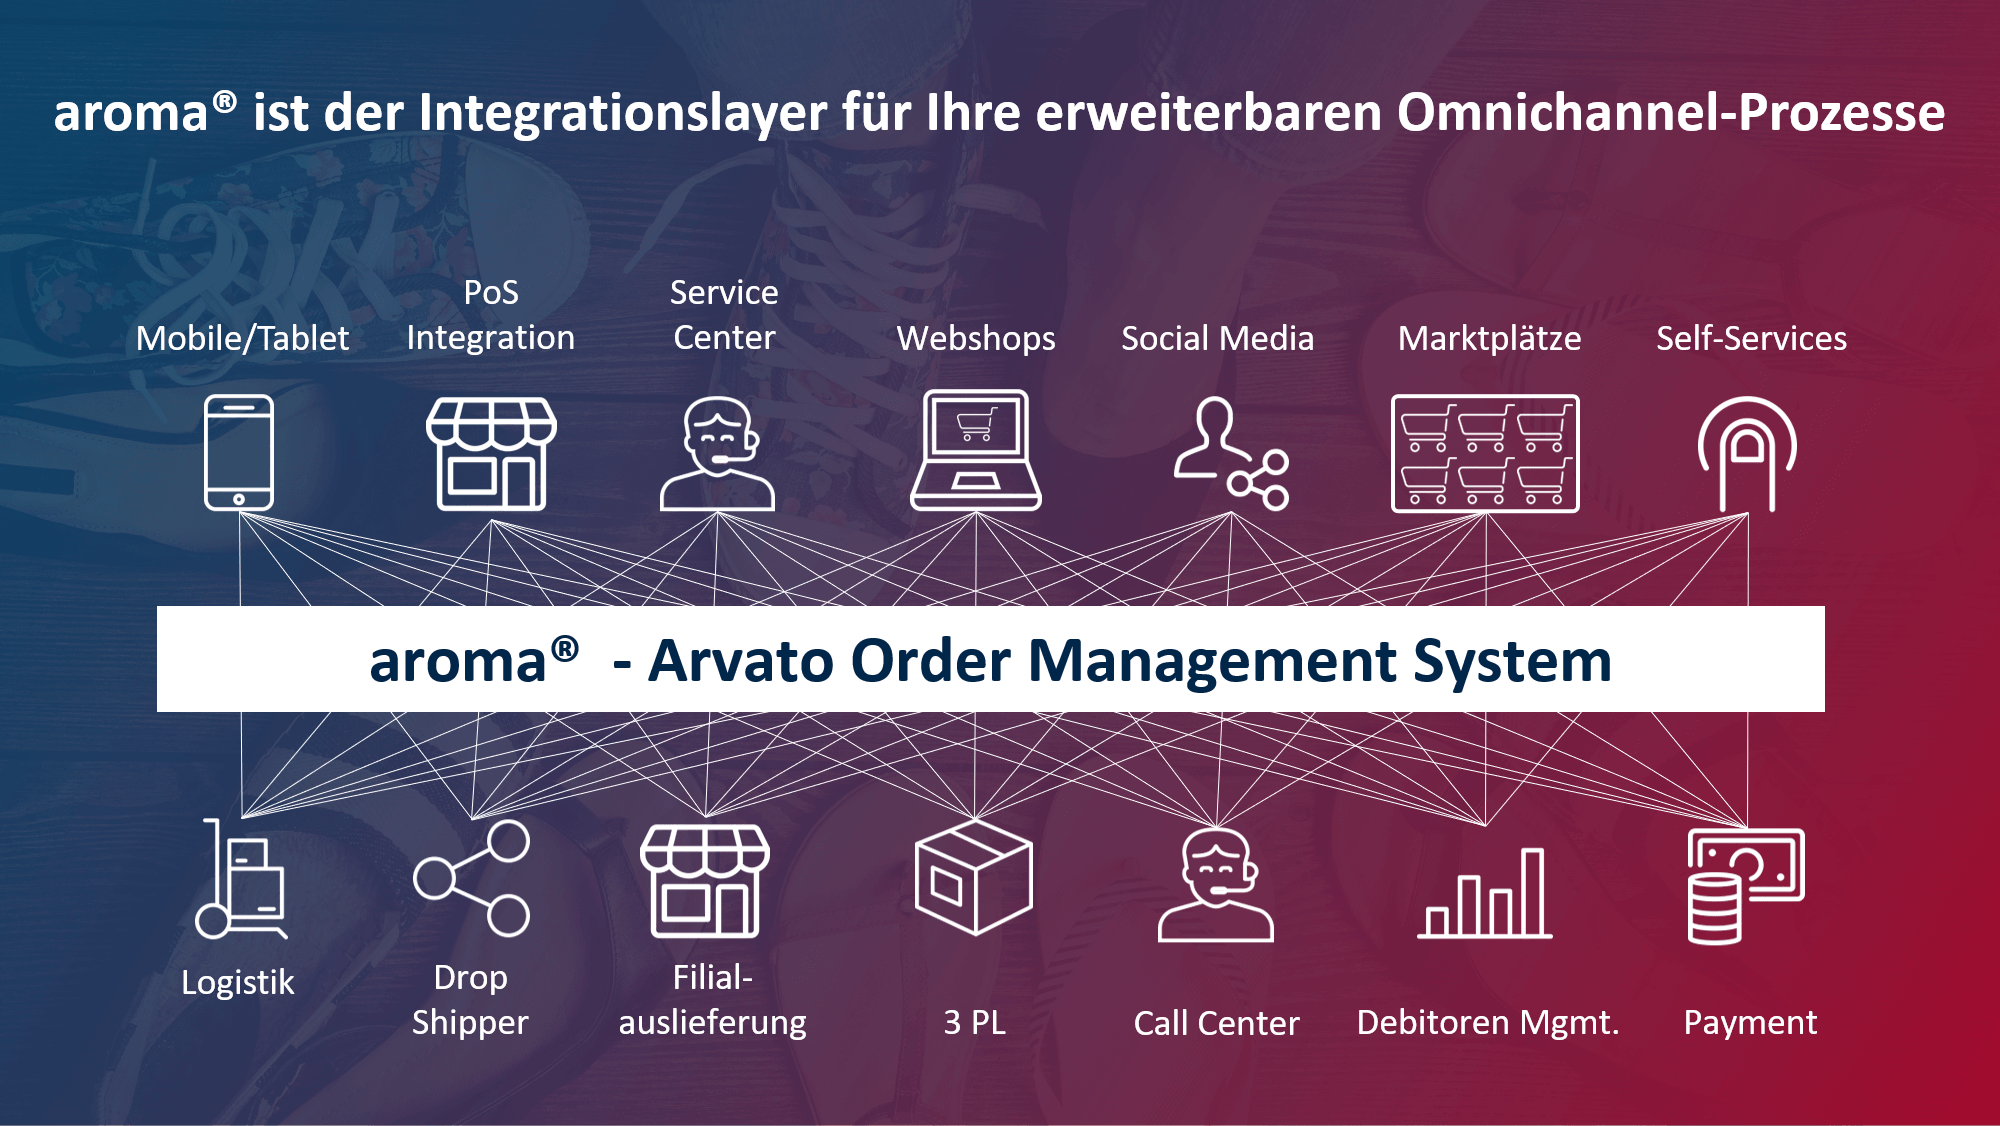 Die Grafik zeigt das Arvato Order Management System aroma® als Integrationslayer für erweiterbare Omnichannel Prozesse.